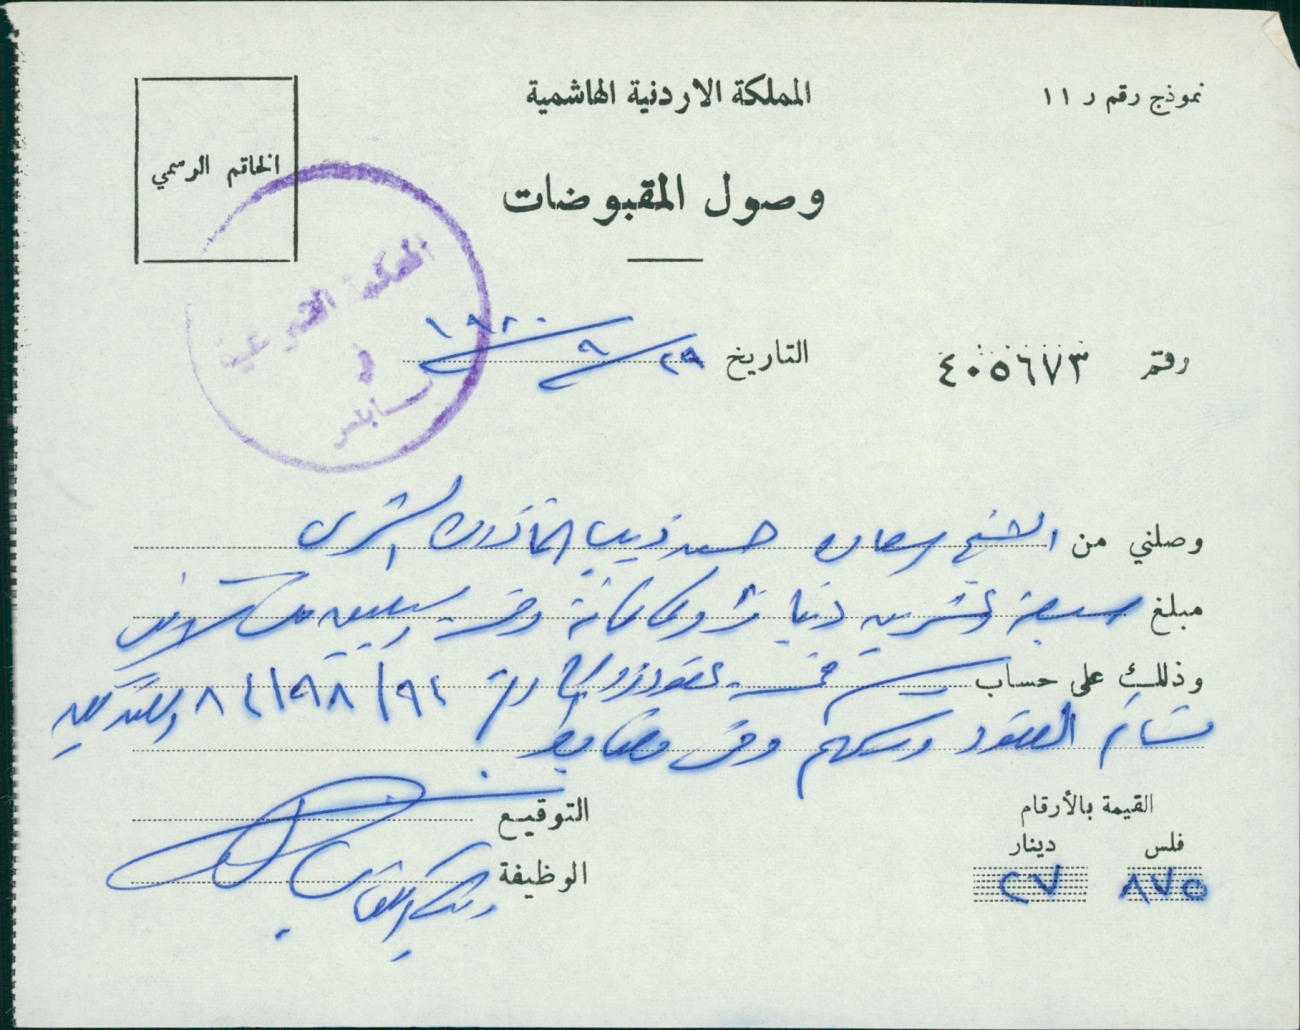 وصل باسم الشيخ سعادة ذيب على حساب رسم عقد زواج في أيلول 1980 